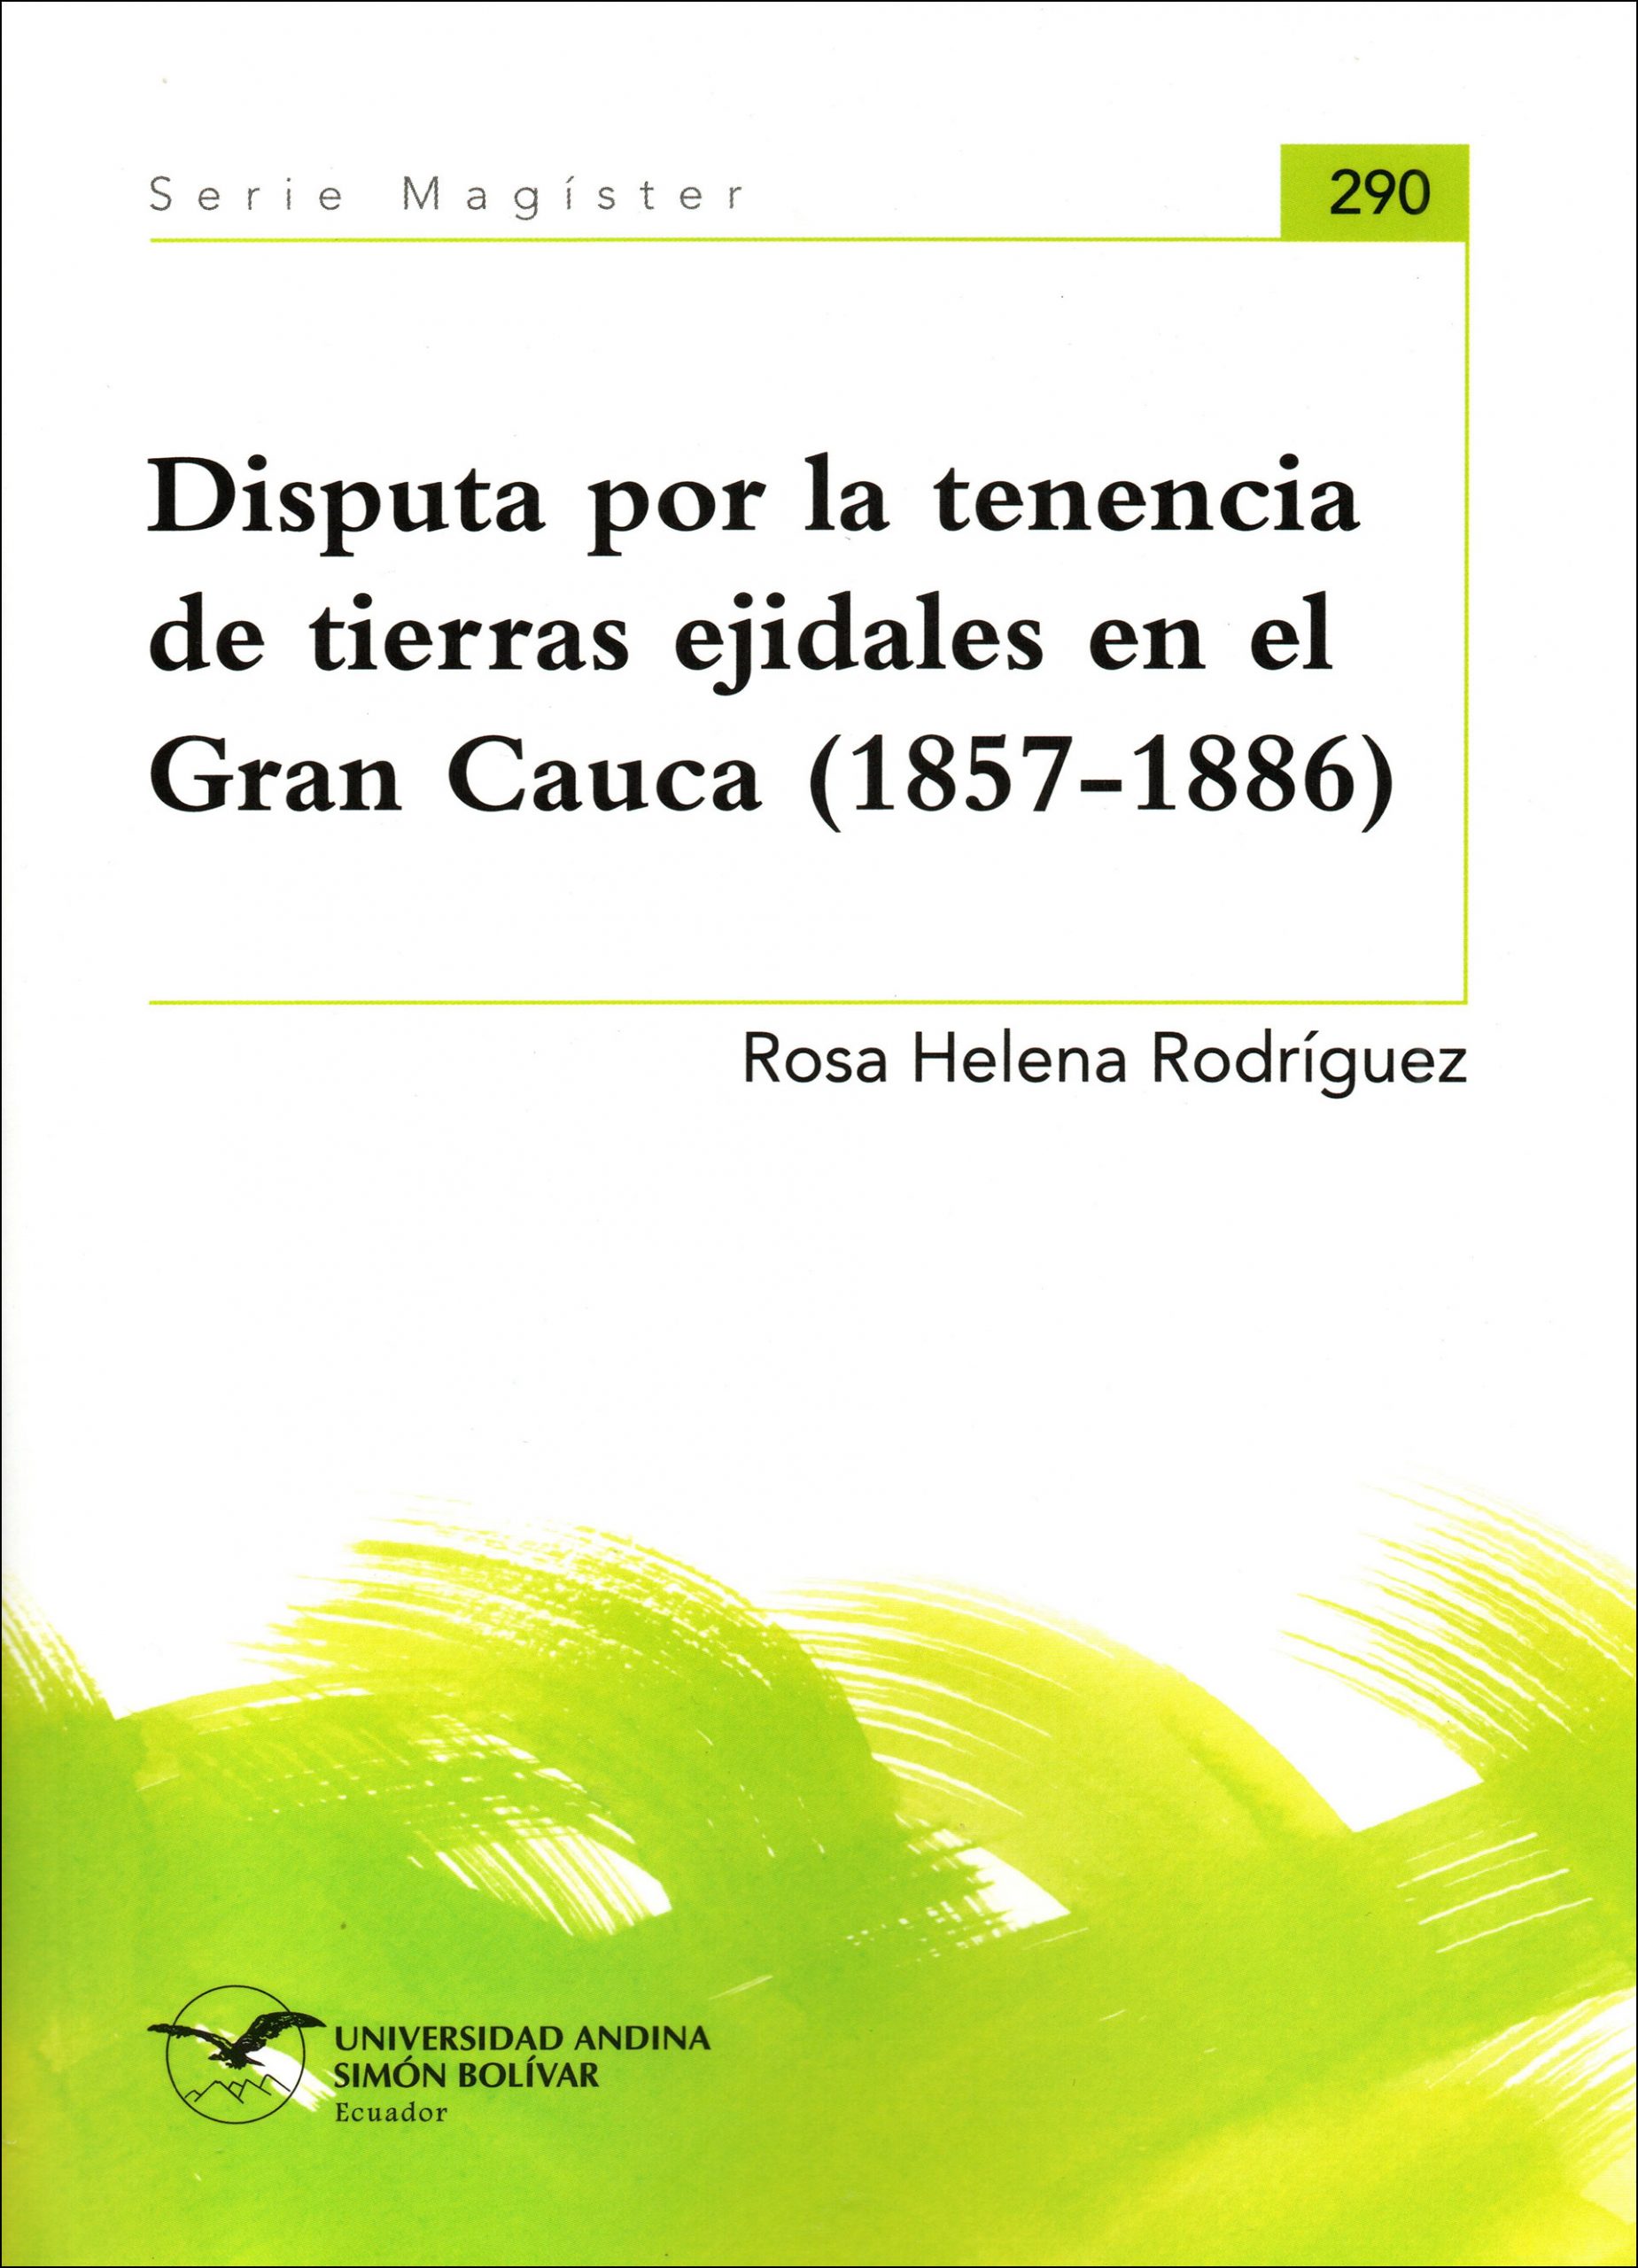 Disputa por la tenencia de tierras ejidales en el Gran Cauca (1857-1886)